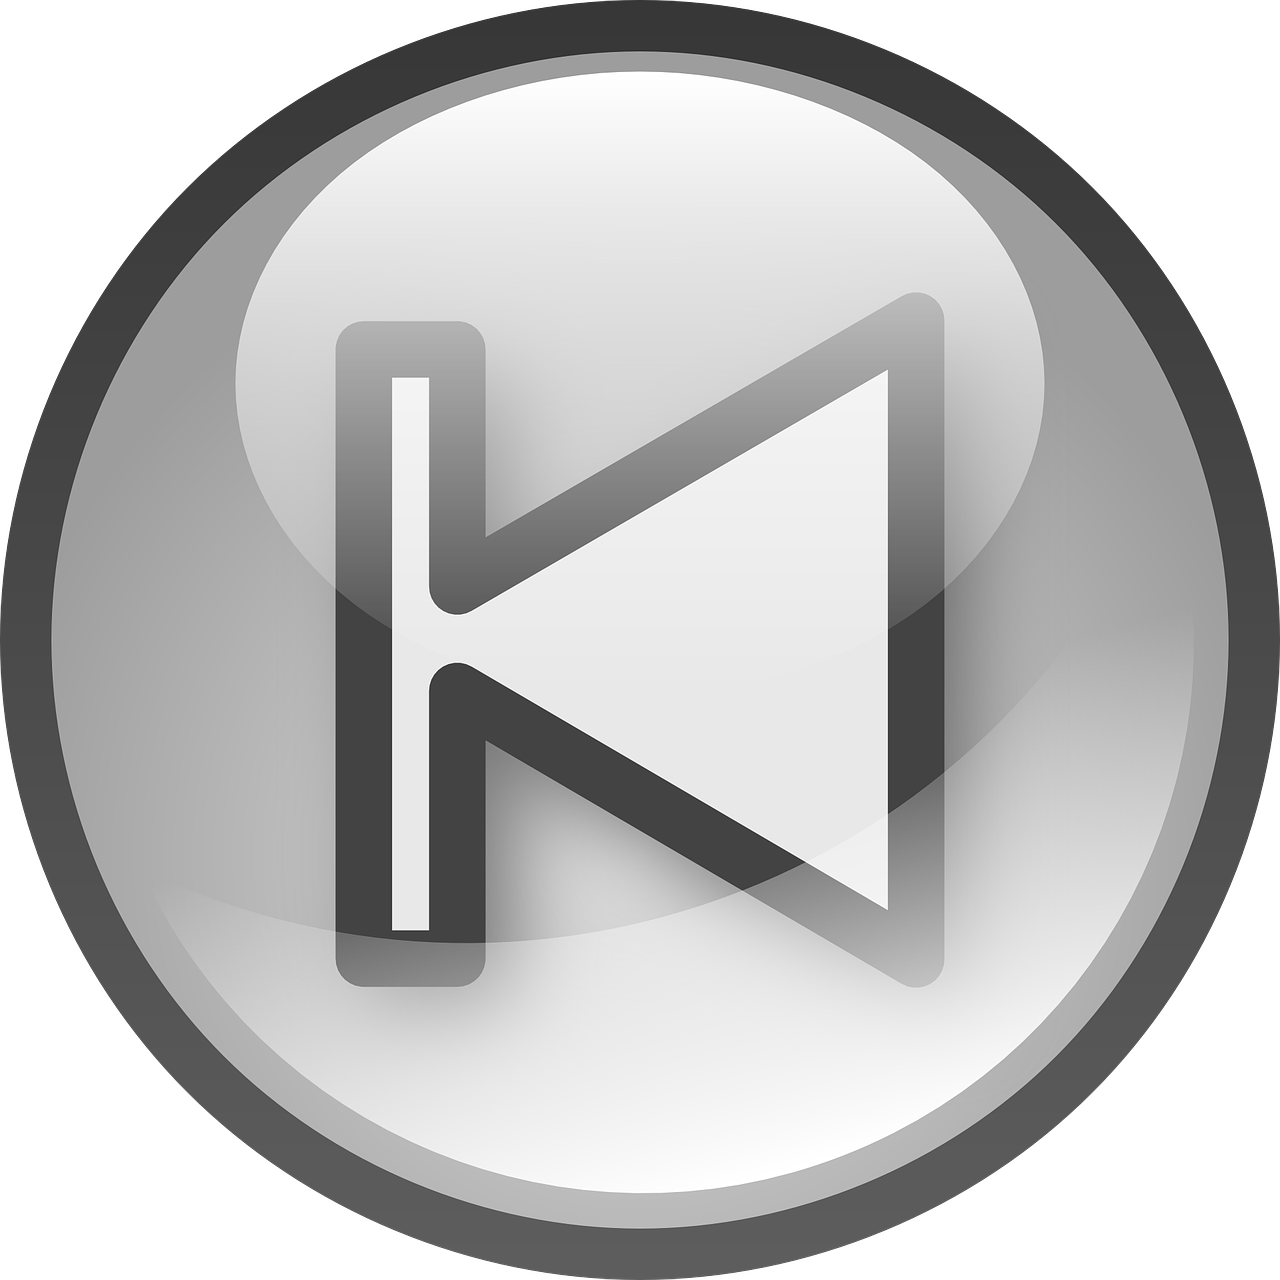 Next Audio Button Set Svg Clip Arts 600 X 600 Px - Png Download (600x600), Png Download